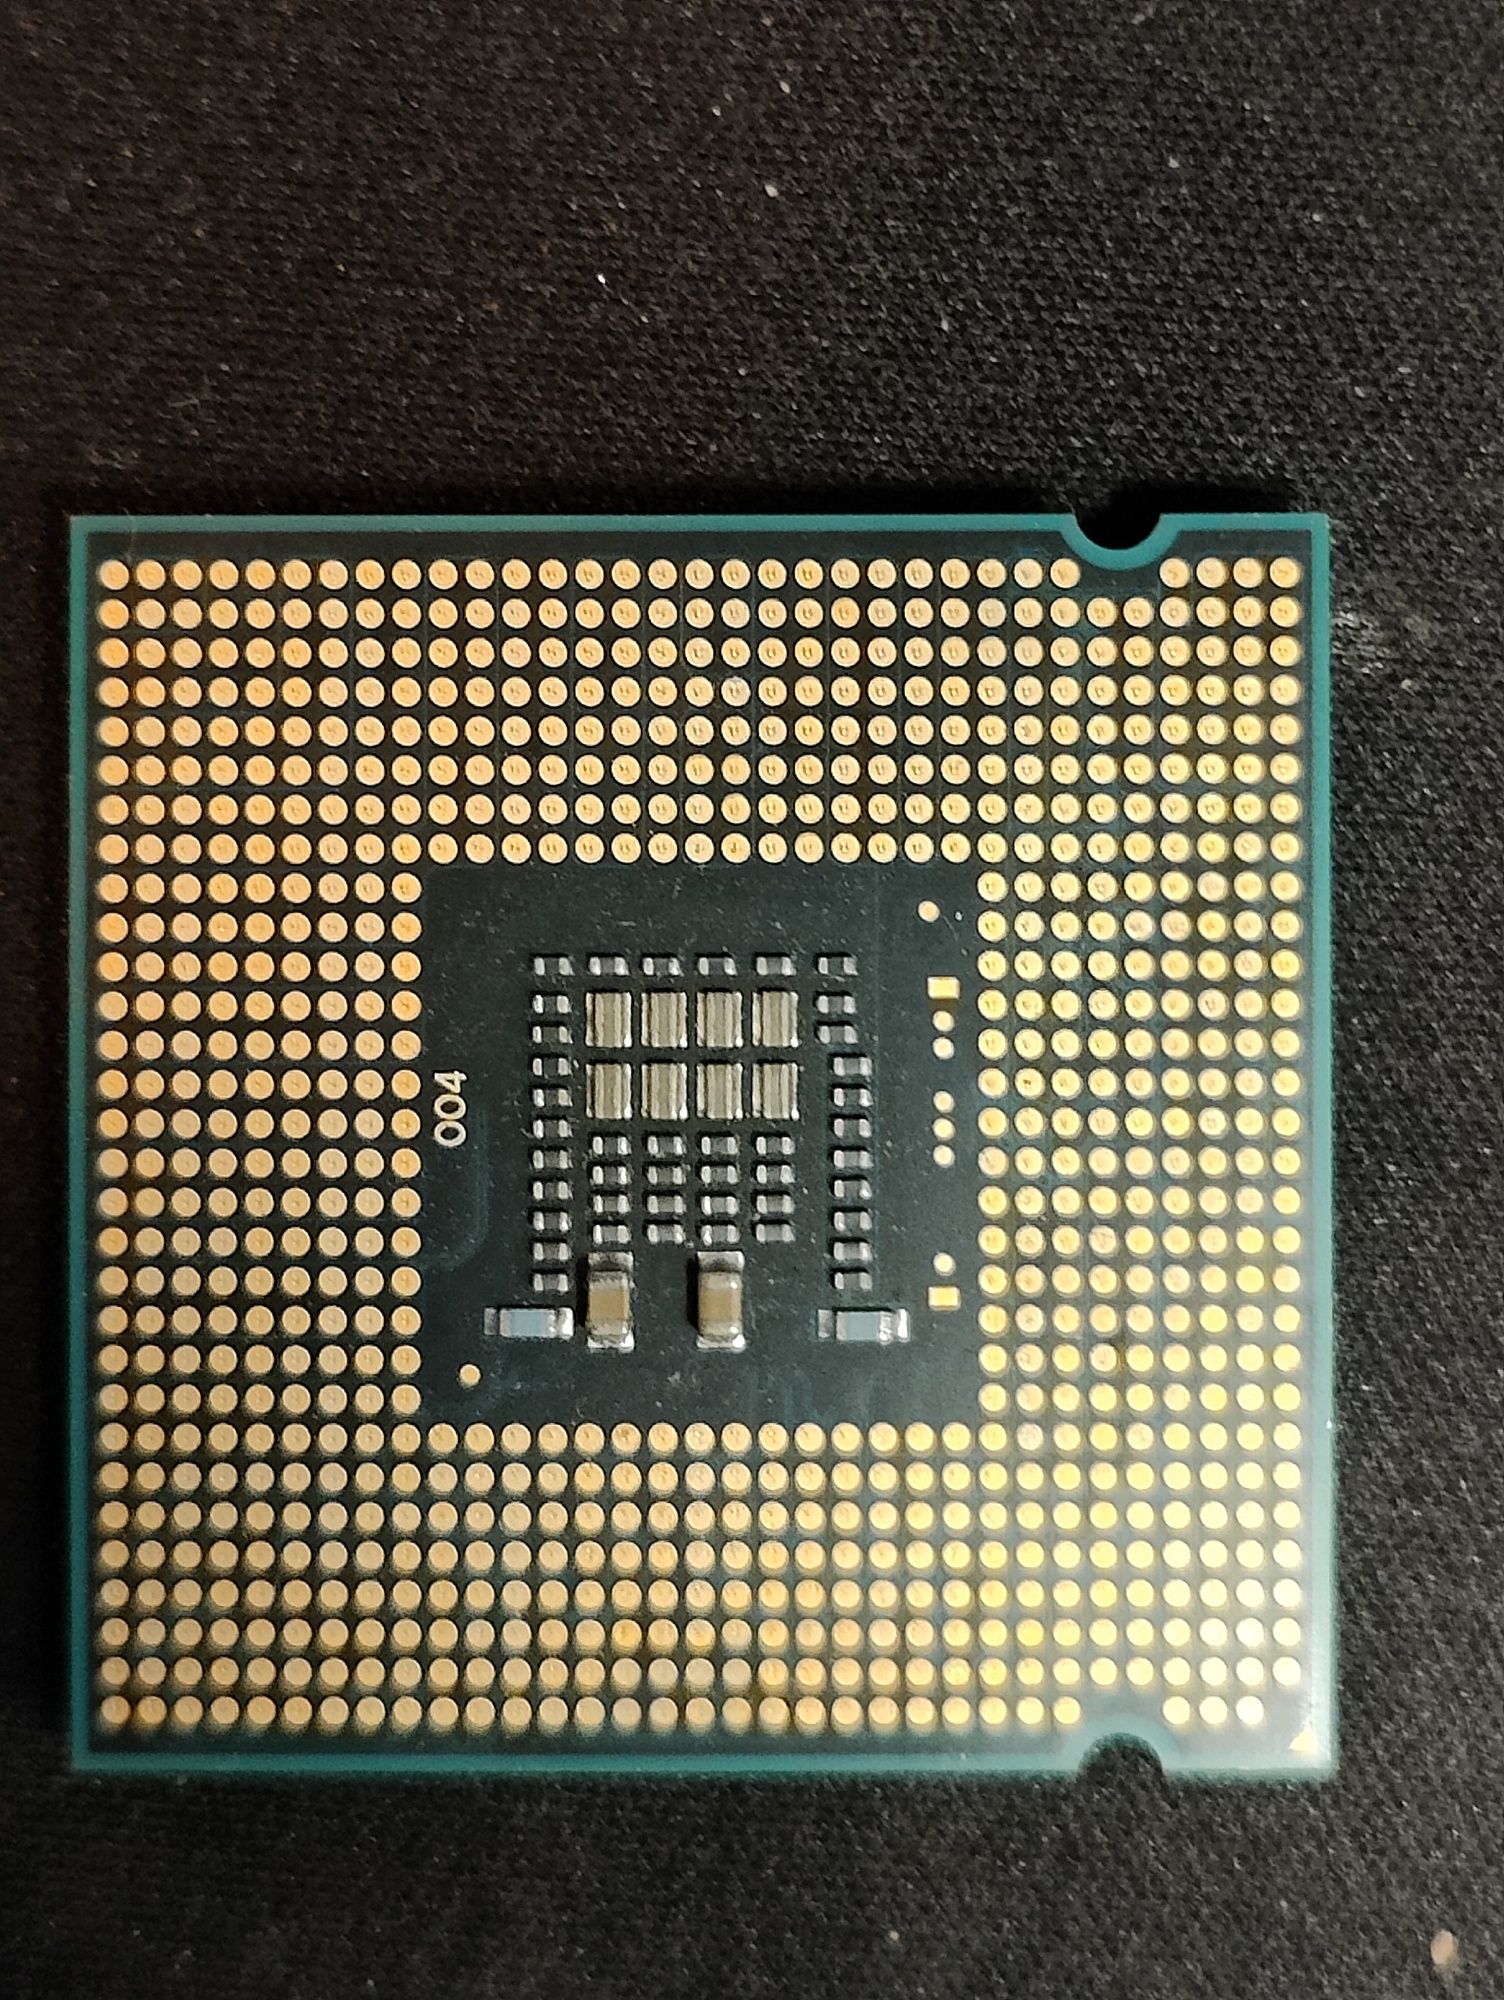 Intel Pentium E5800 3.20GHz